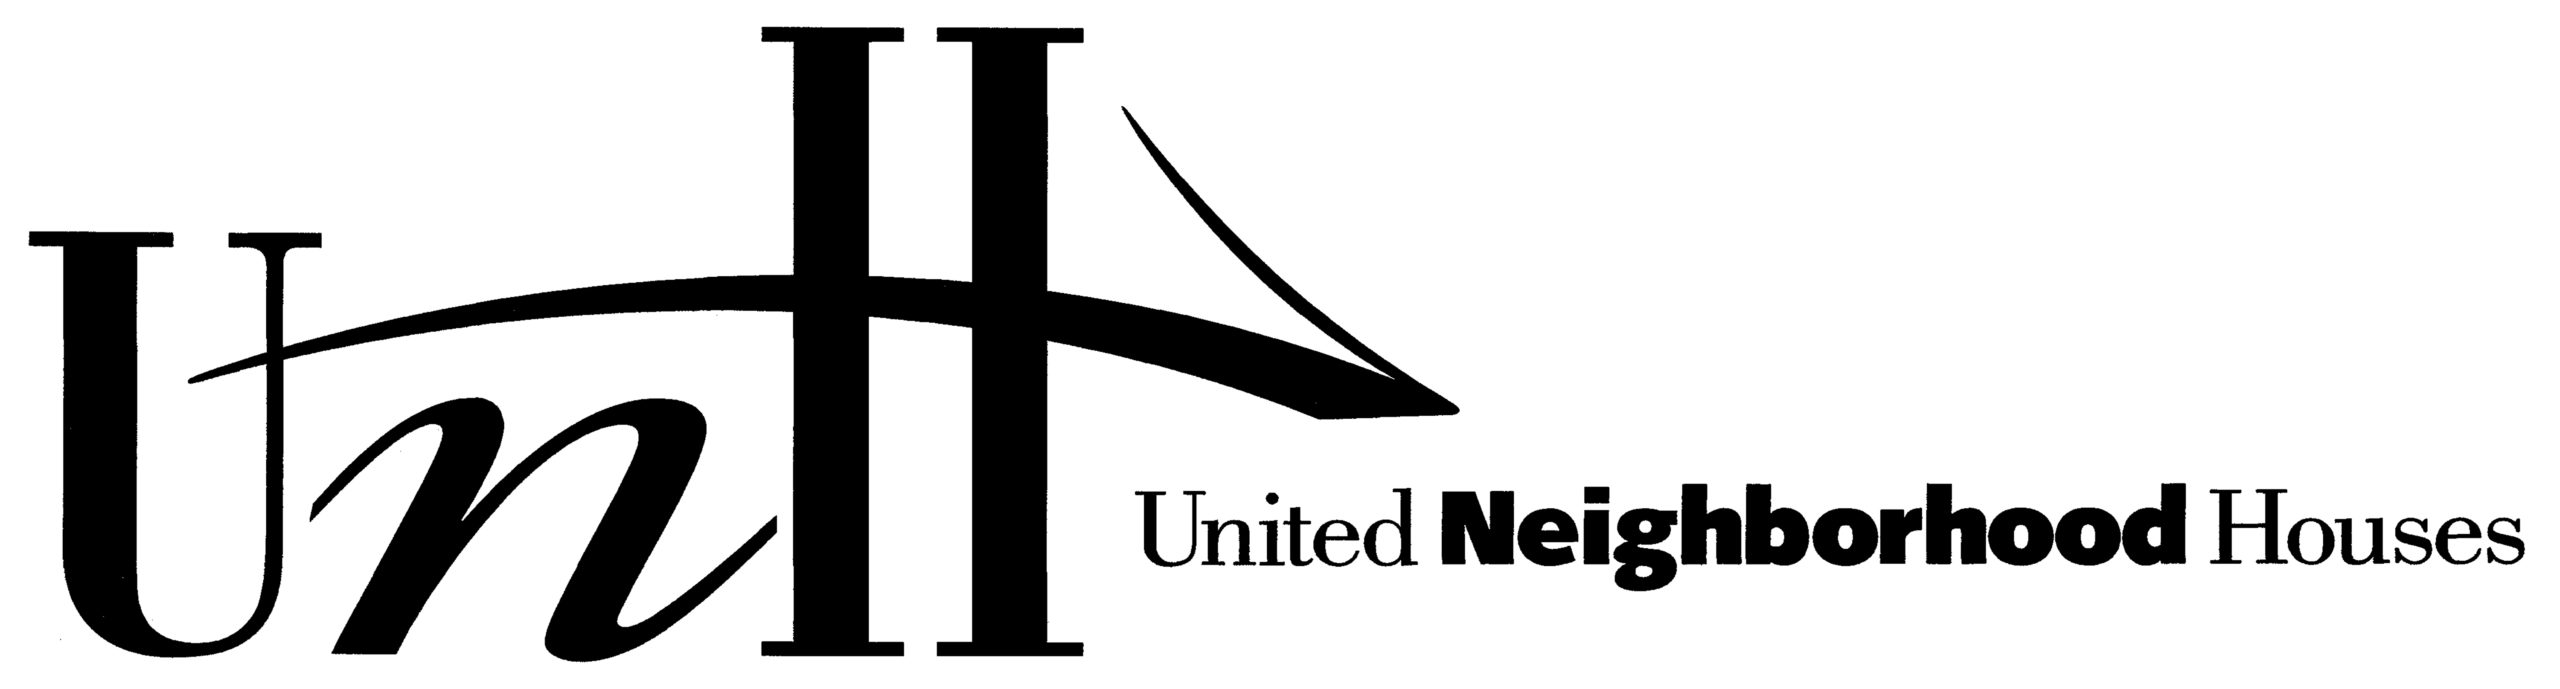 United Neighborhood Houses